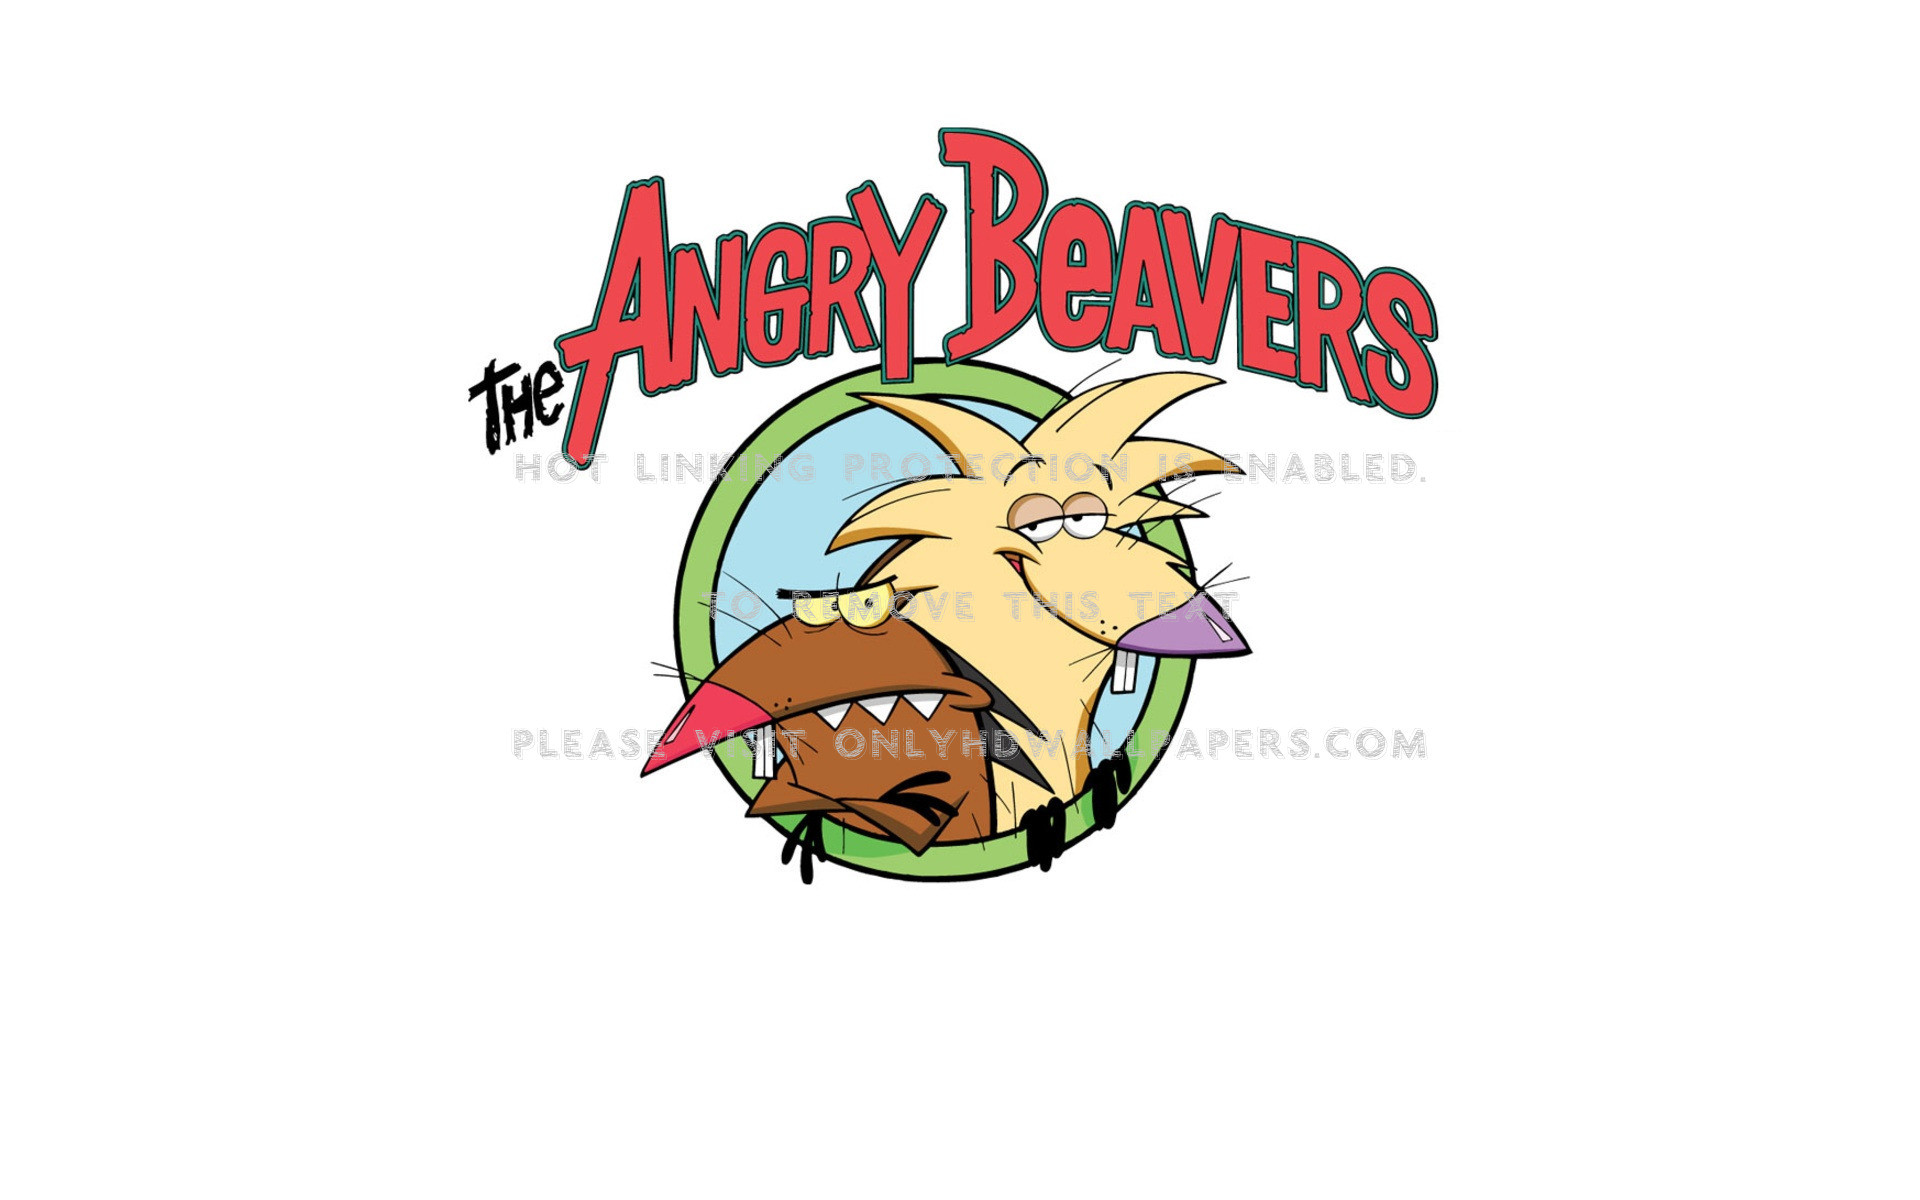 Эй бобры. Крутые бобры Норберт и Деггет. Angry beavers Норберт. Злюки бобры.